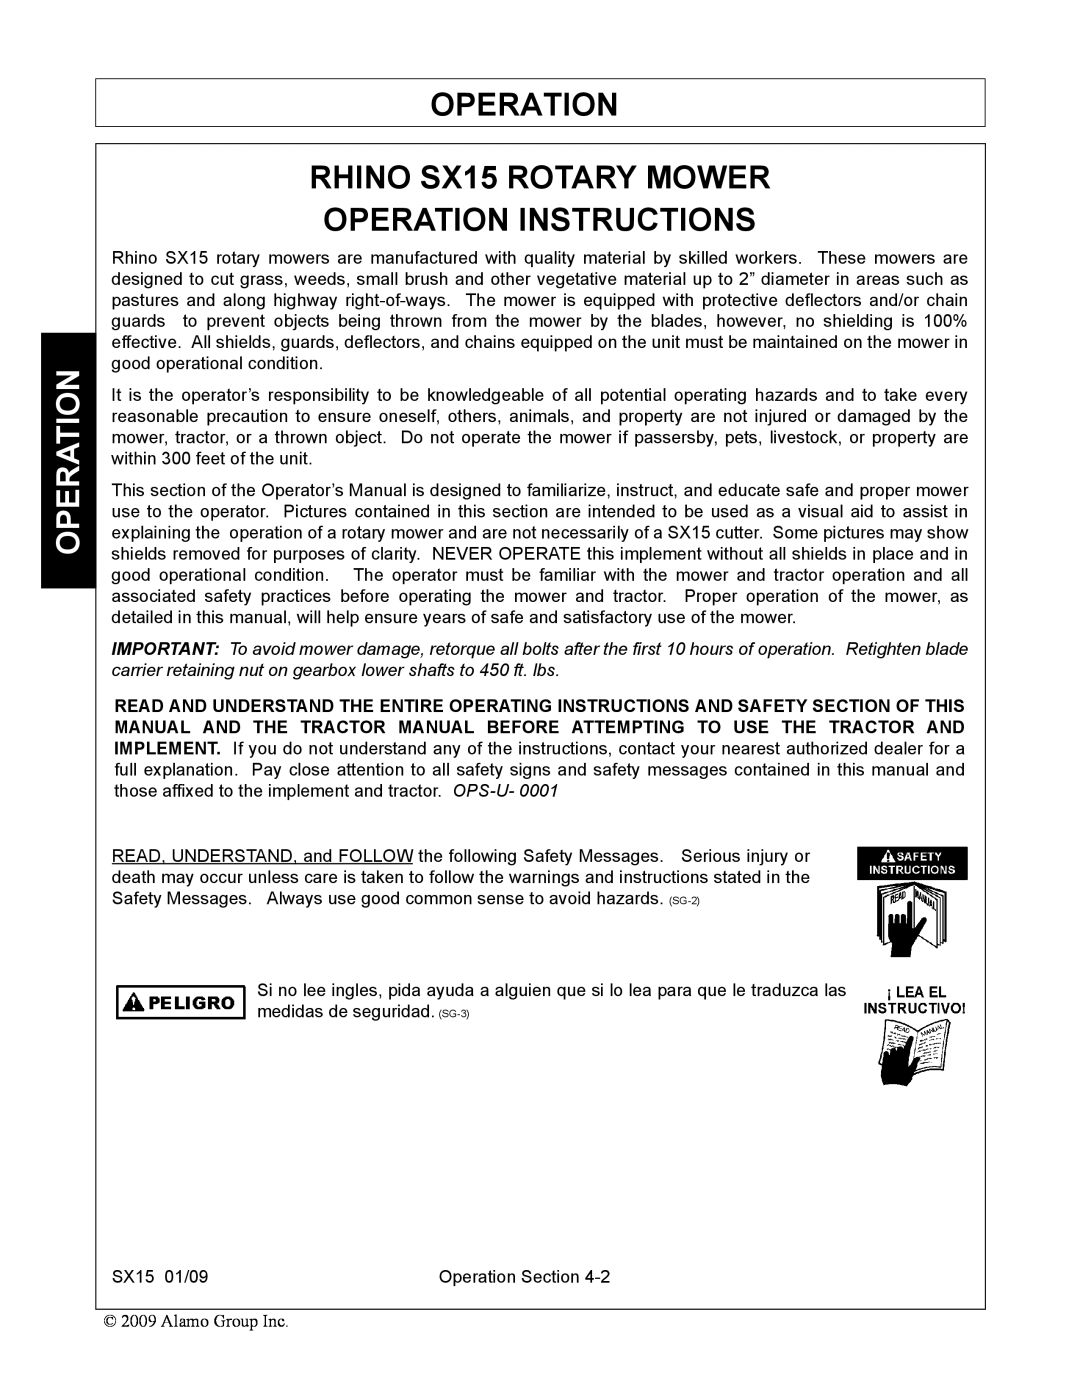 Alamo SX15 manual Operation 